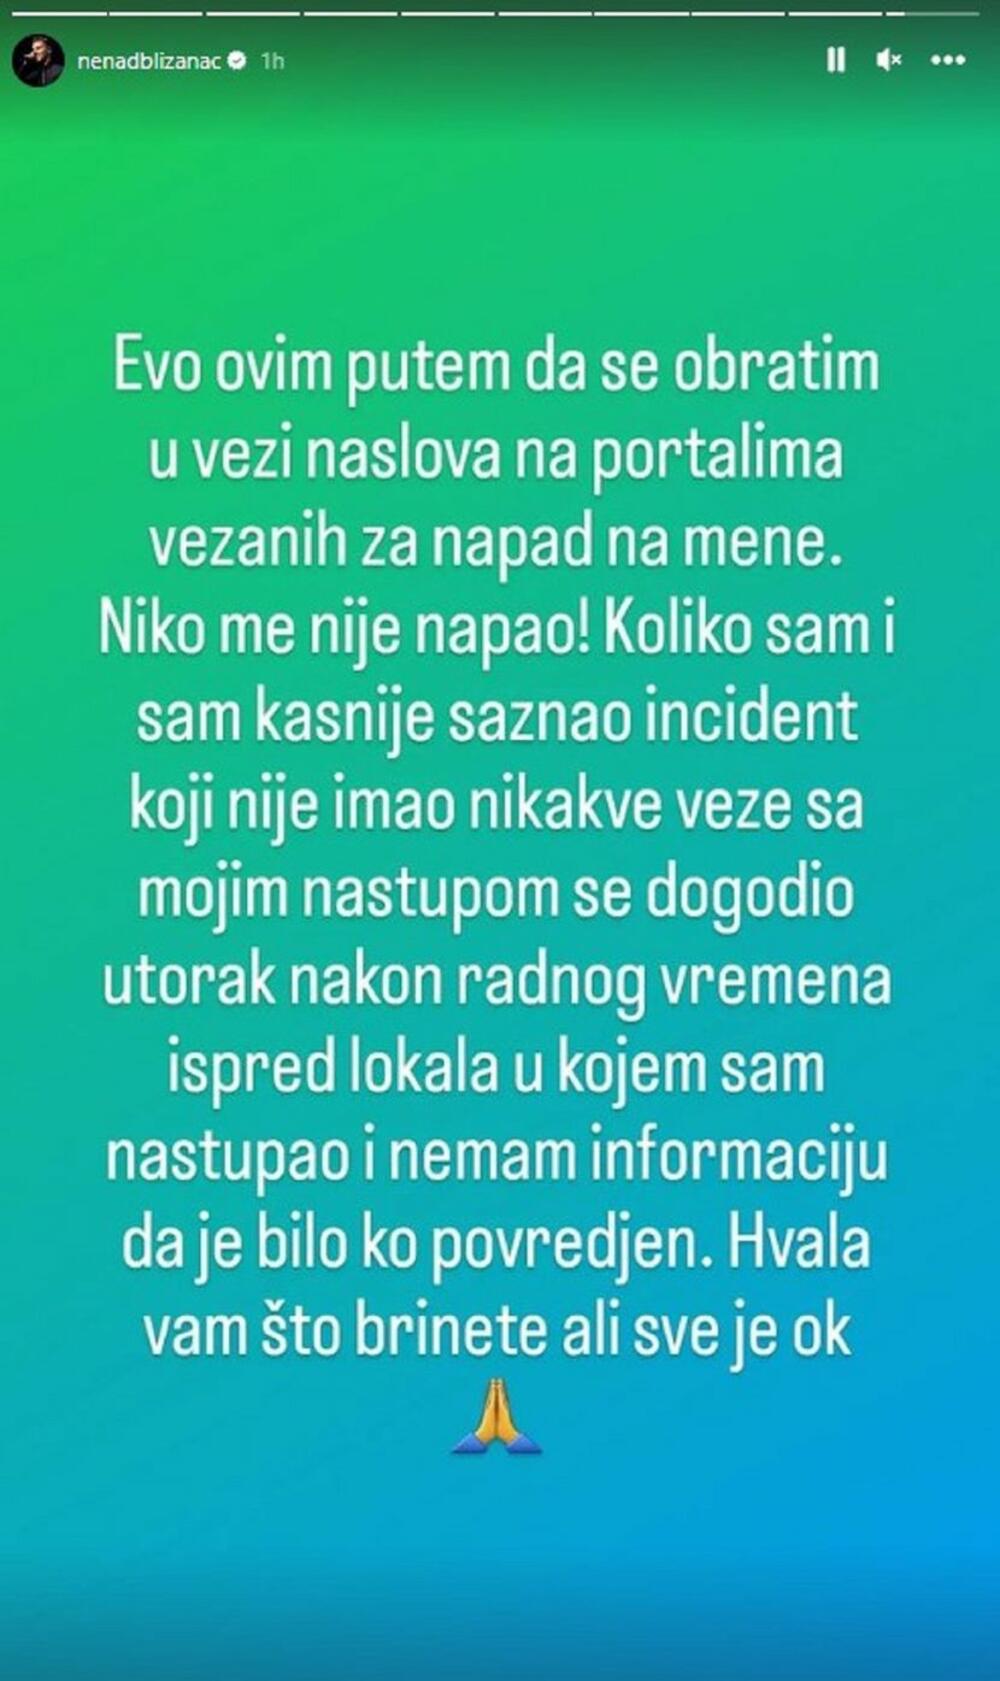 Nenad Jovanović Blizanac o incidentu koji je dogodio u kafani u kojoj je pevao